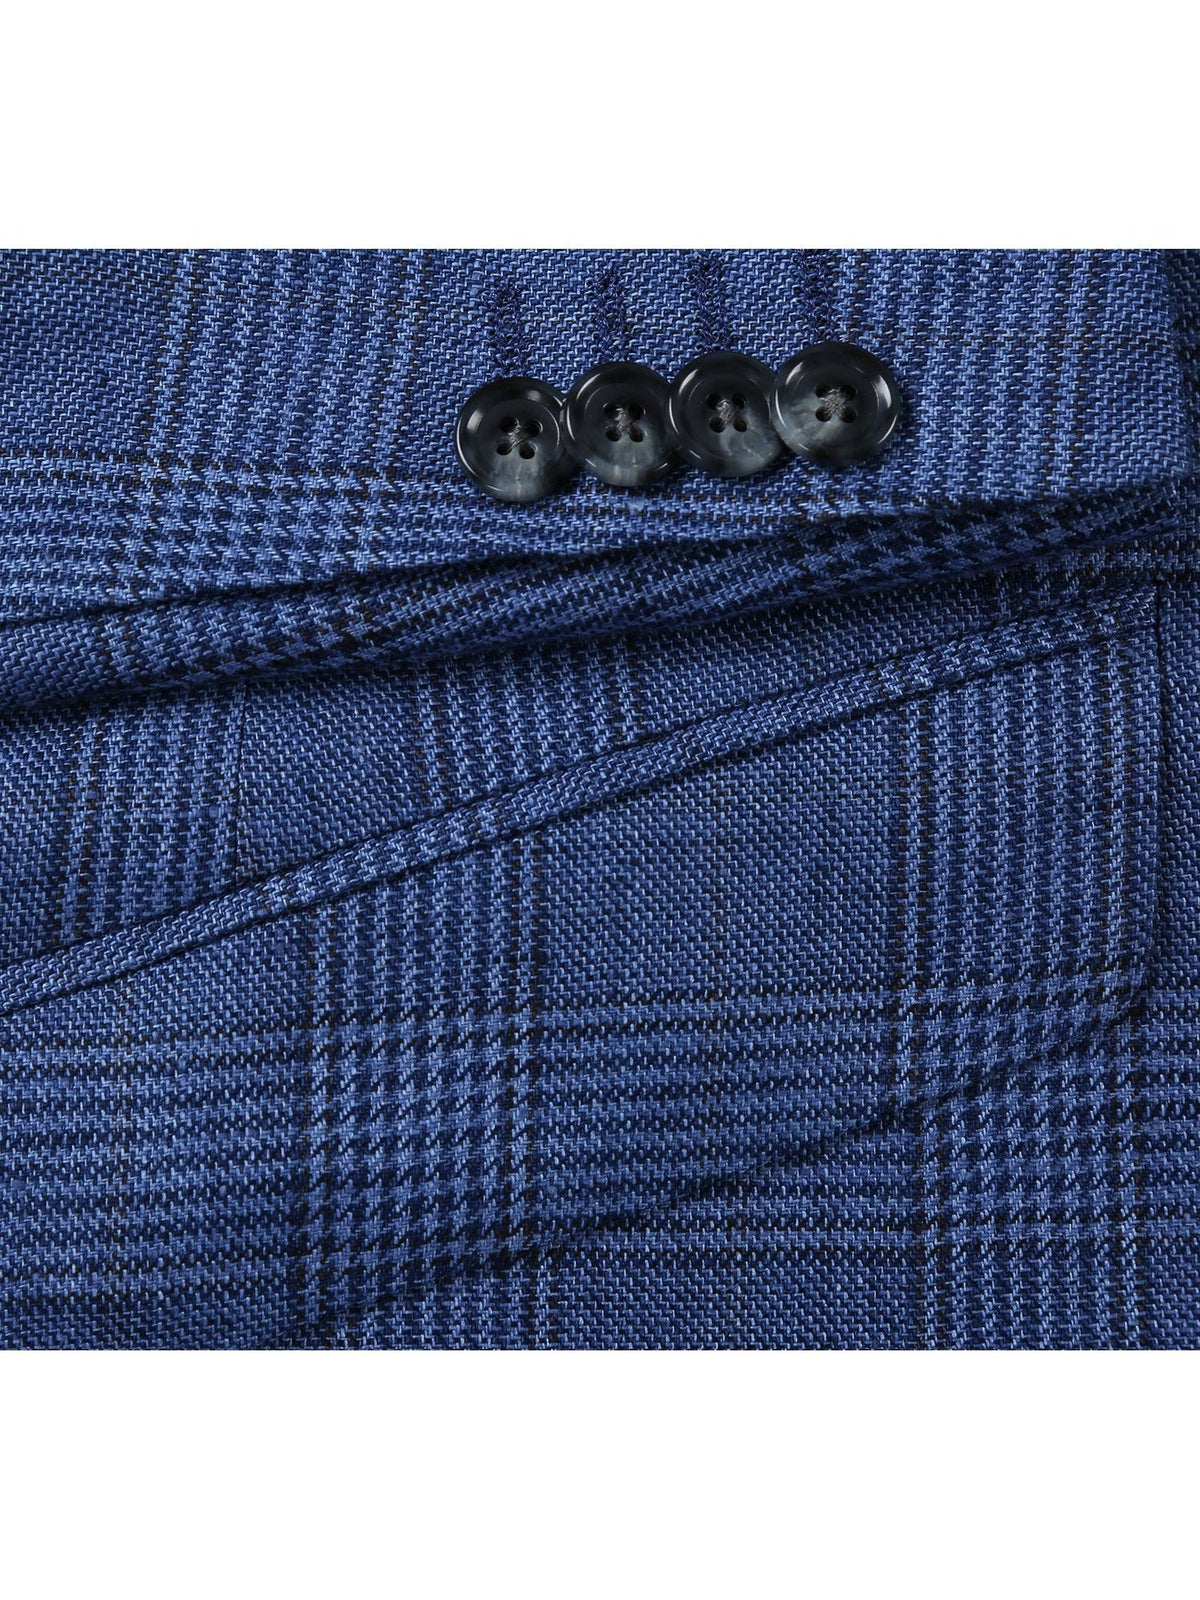 Men&#39;s Slim Fit Blazer Linen Sport Coat